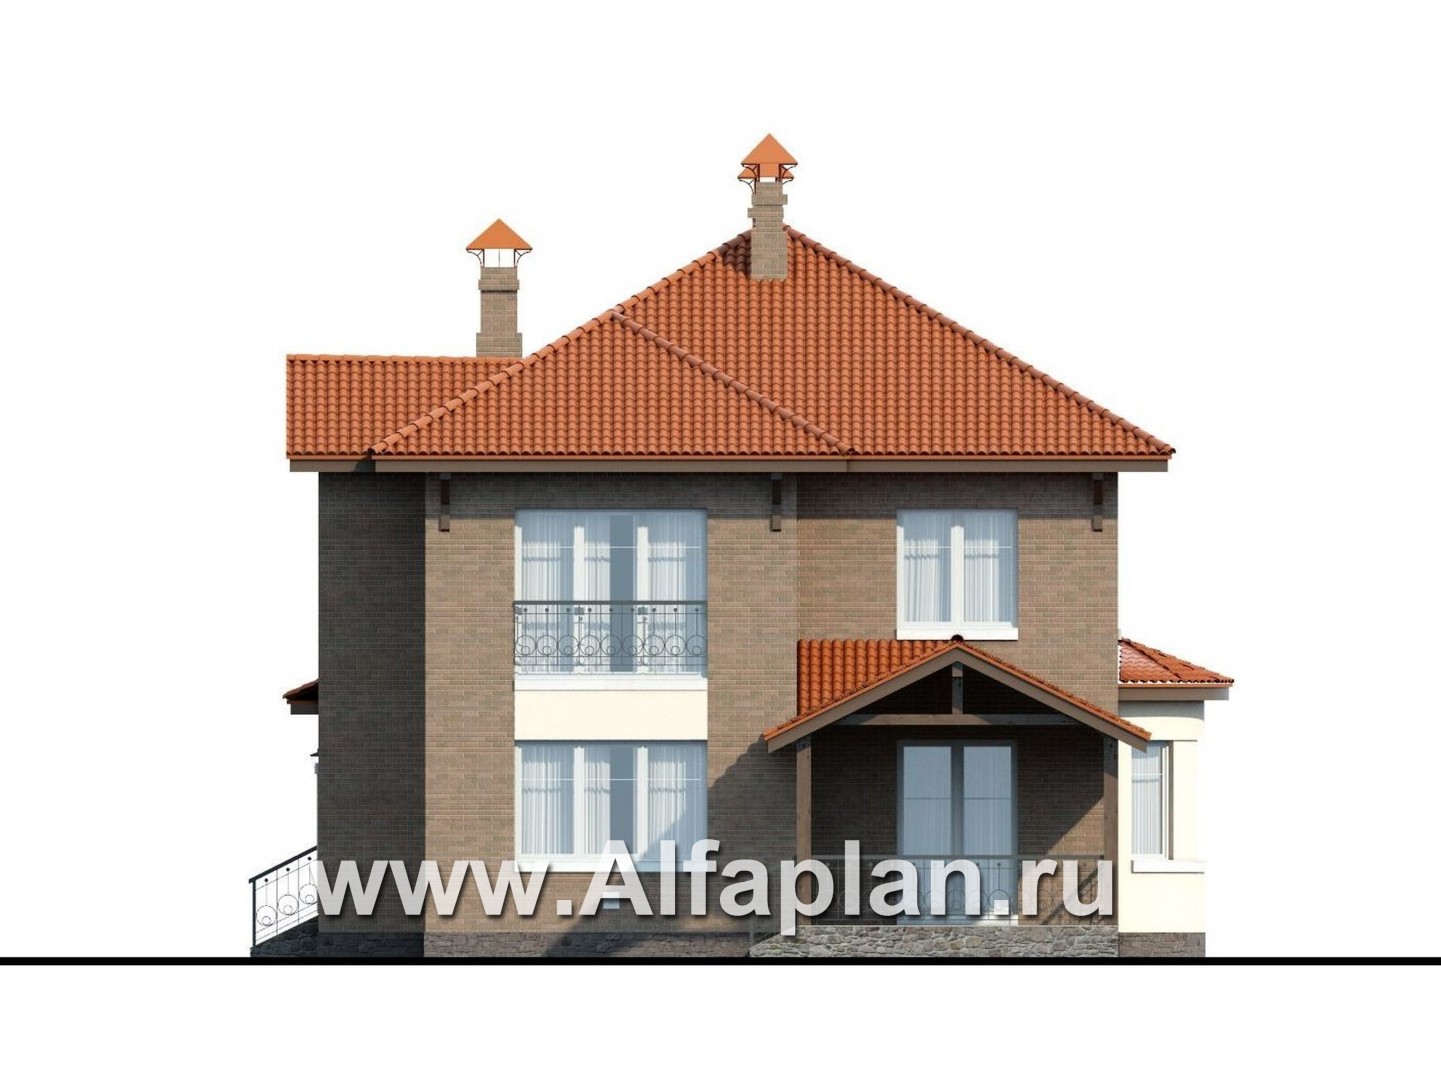 Проекты домов Альфаплан - «Митридат» - проект двухэтажного дома, с эркером и с террасой, планировка с кабинетом на 1 эт, в русском стиле - изображение фасада №4